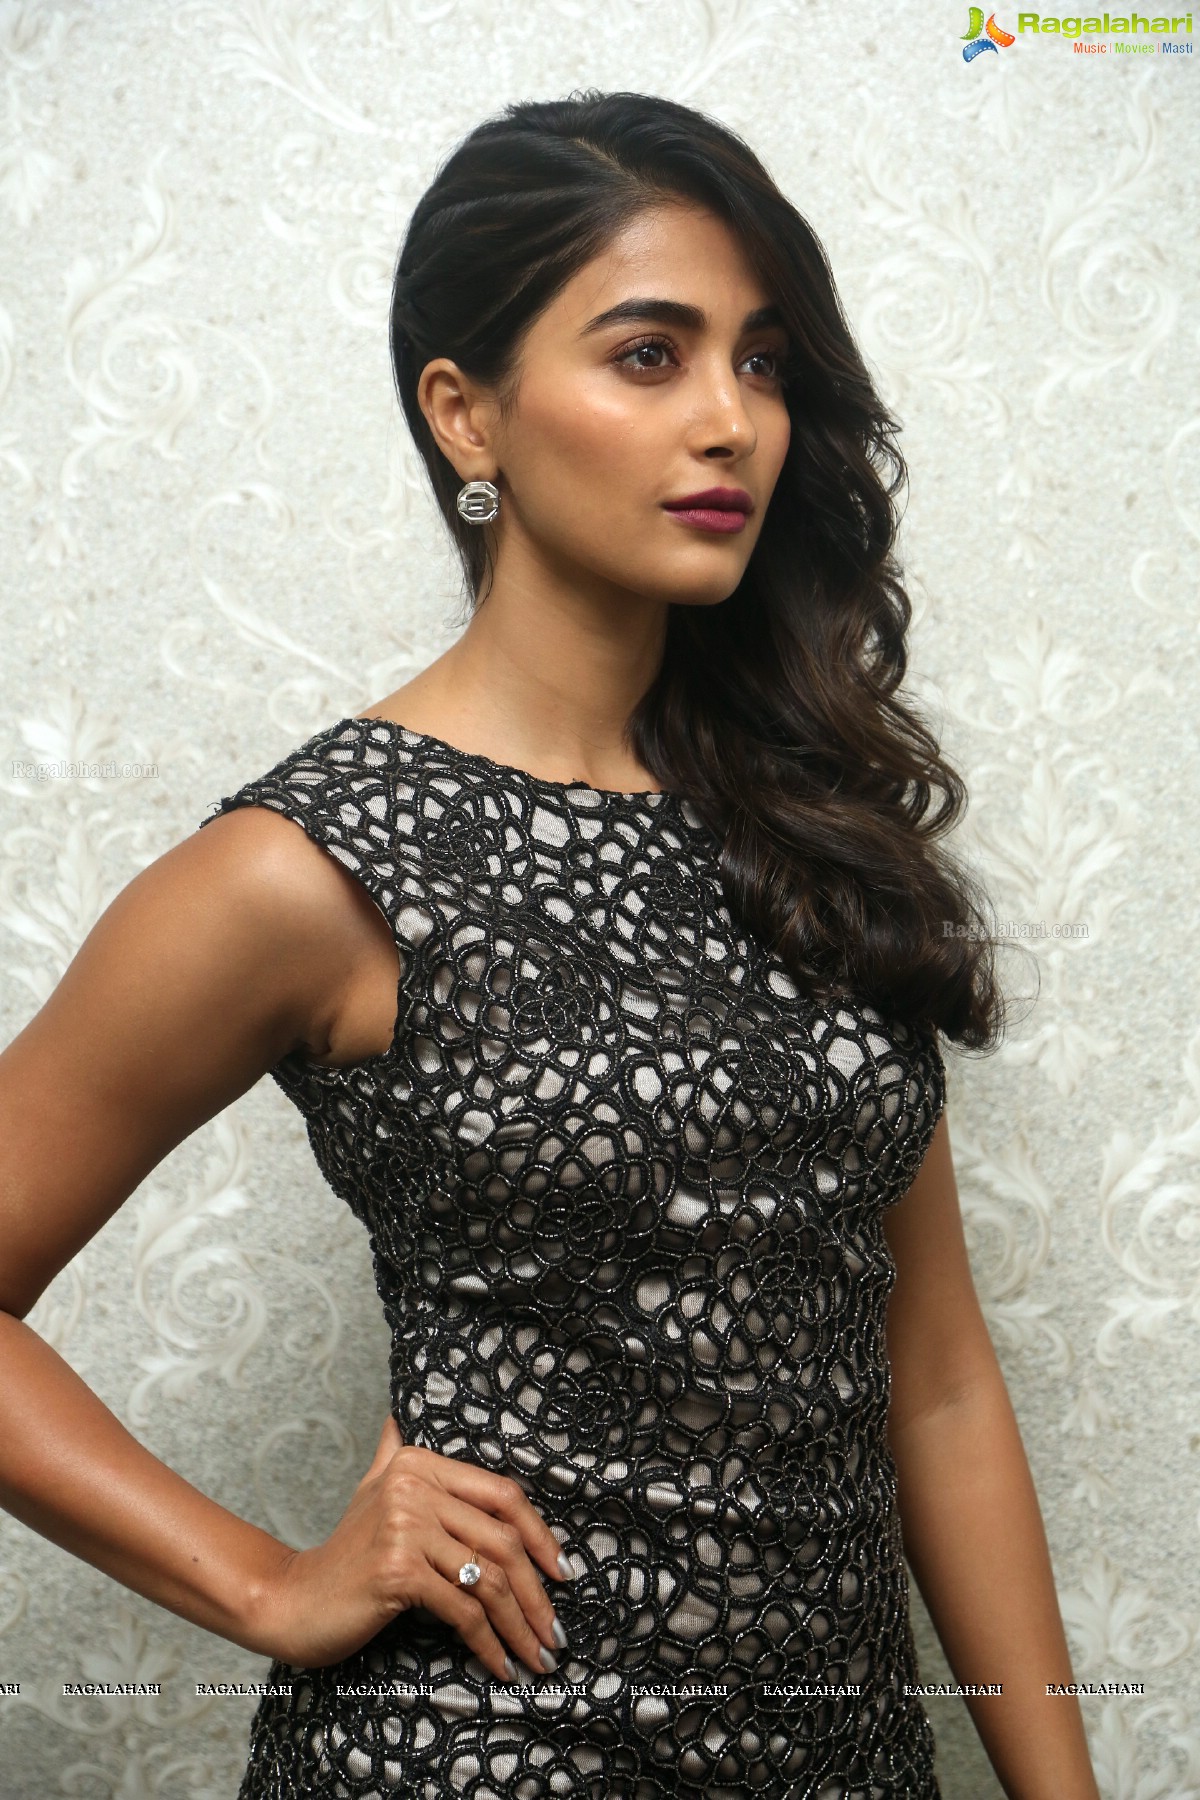 Pooja Hegde in Black Dress, Photo Gallery